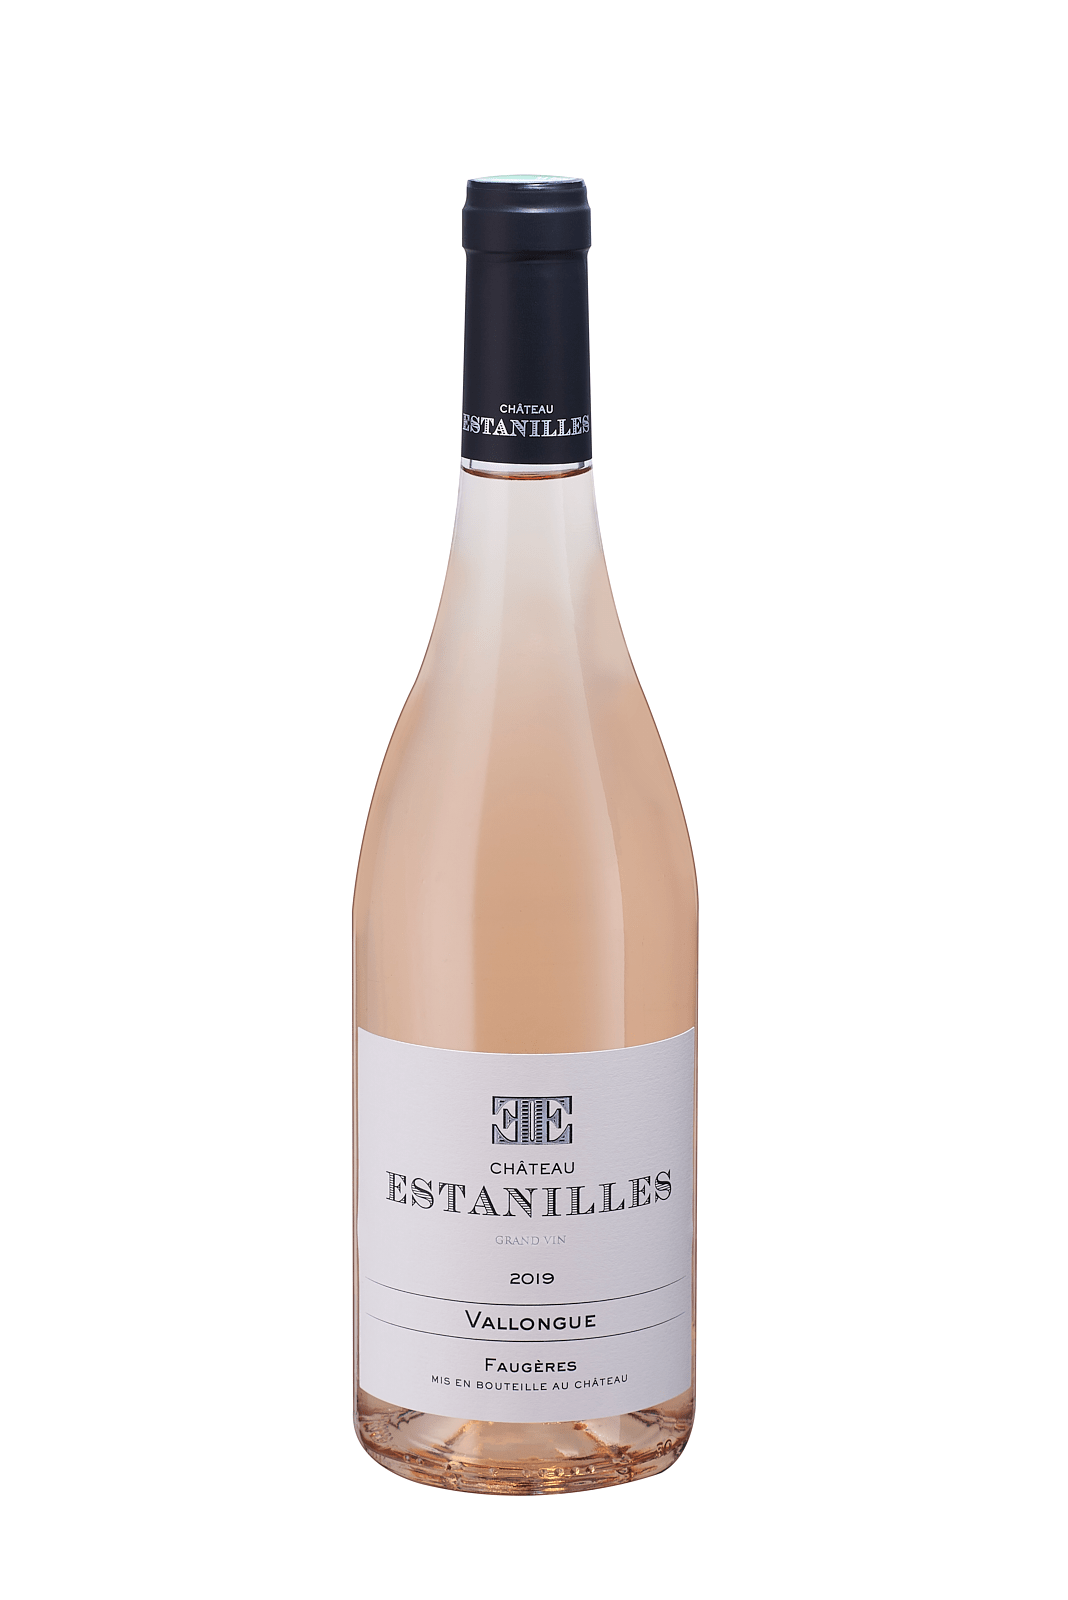 Chateau Estanilles pink wine languedoc faugères grand vin syrah grenache mourvèdre